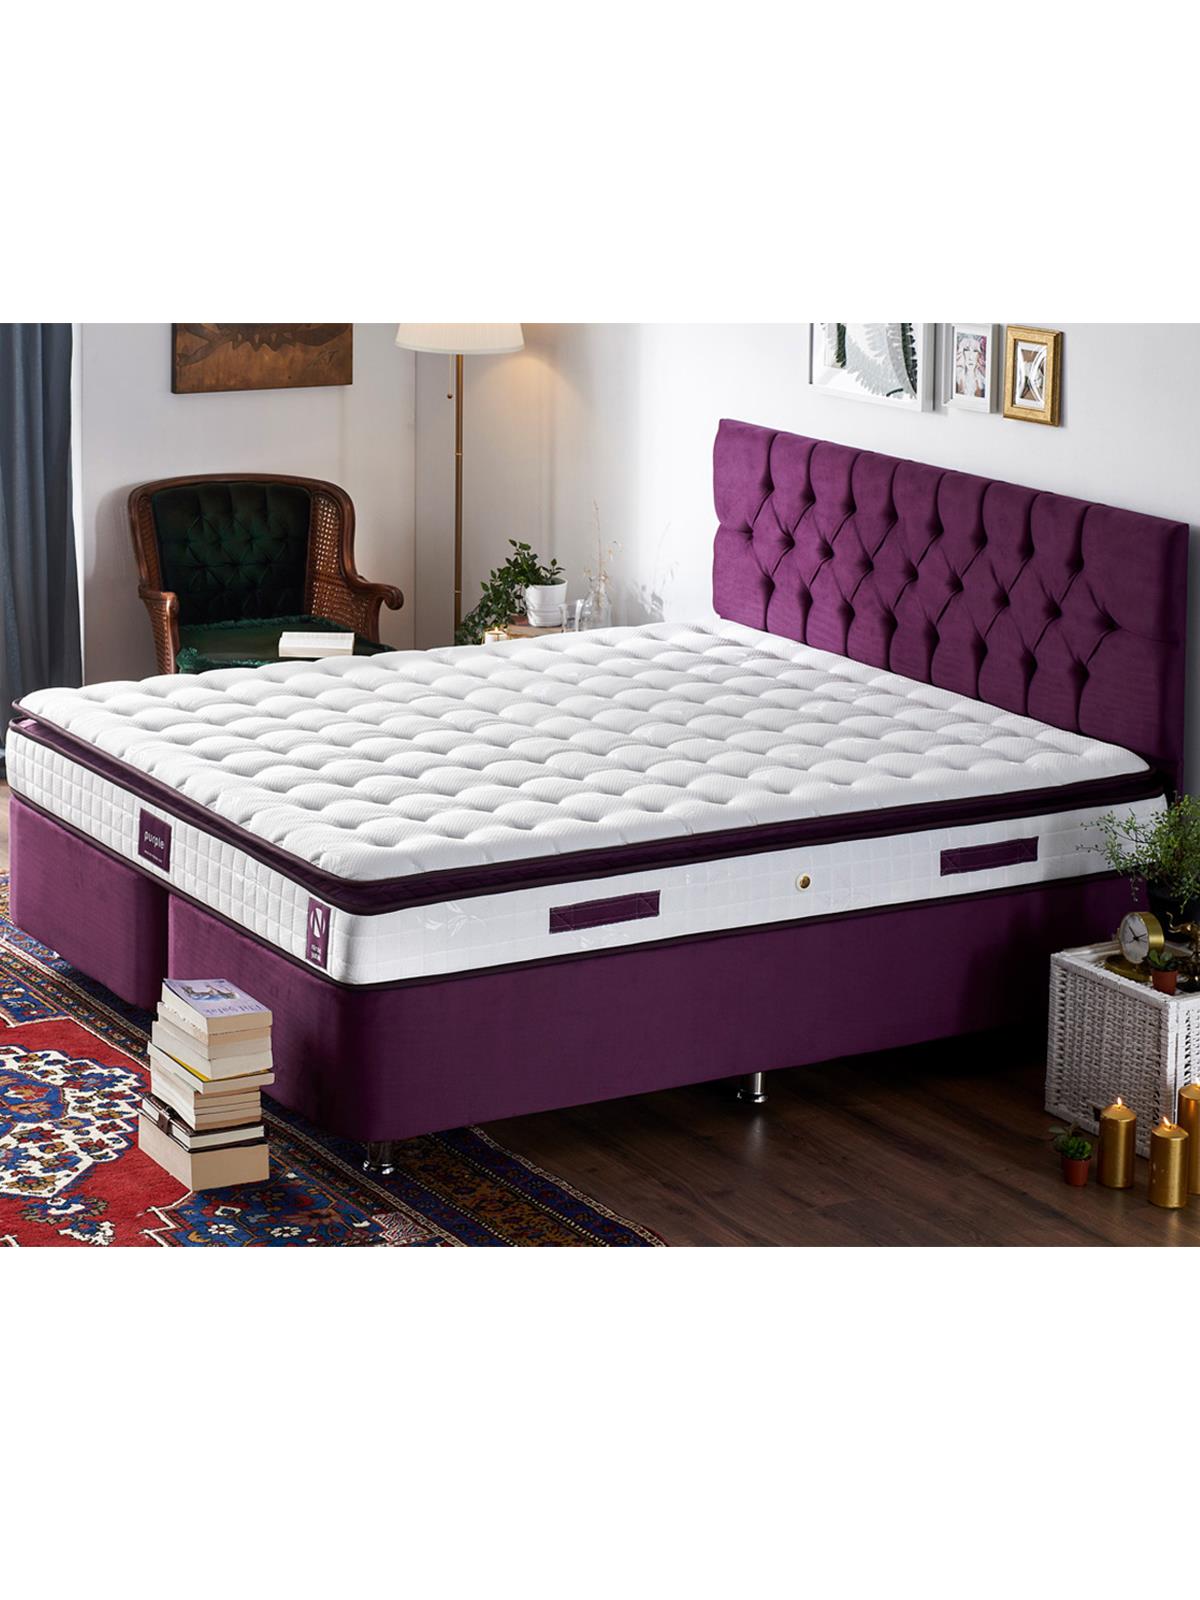 Niron Purple Yatak Seti 140x190 cm Çift Kişilik Yatak Baza Başlık Takımı Orta Sert Yatak Baza ve Başlığı Mor